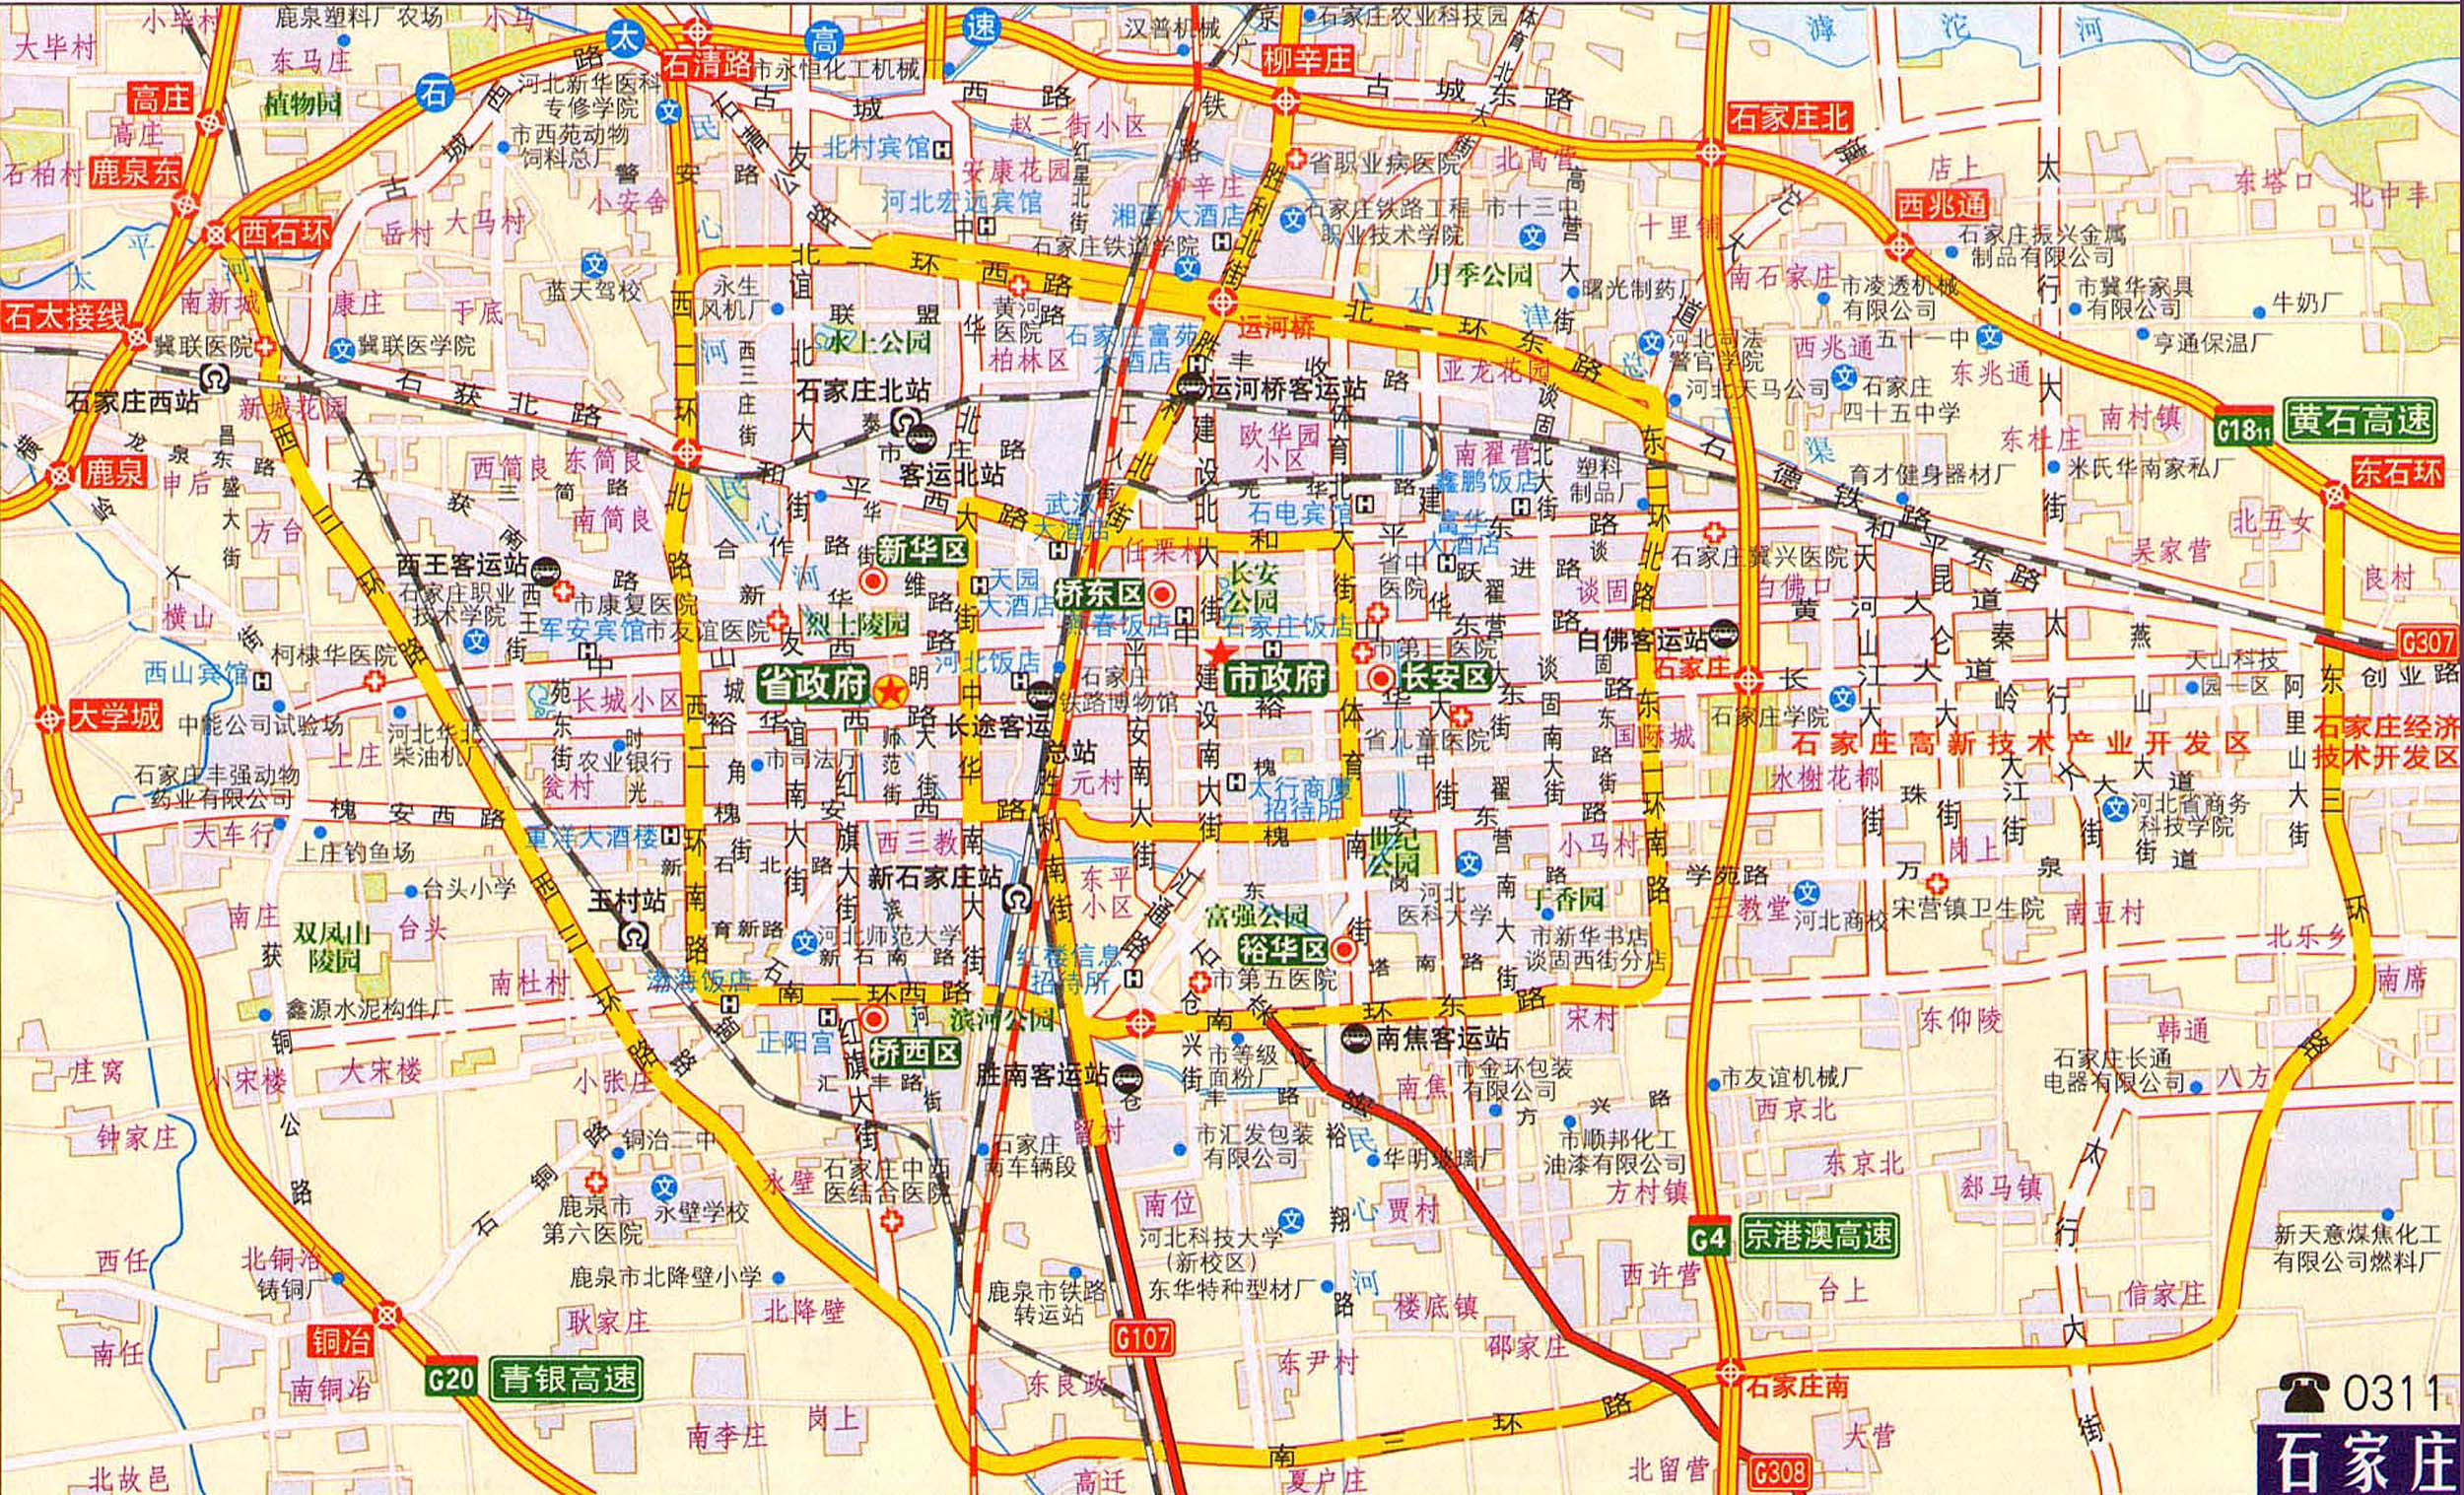 石家庄交通地图2018版